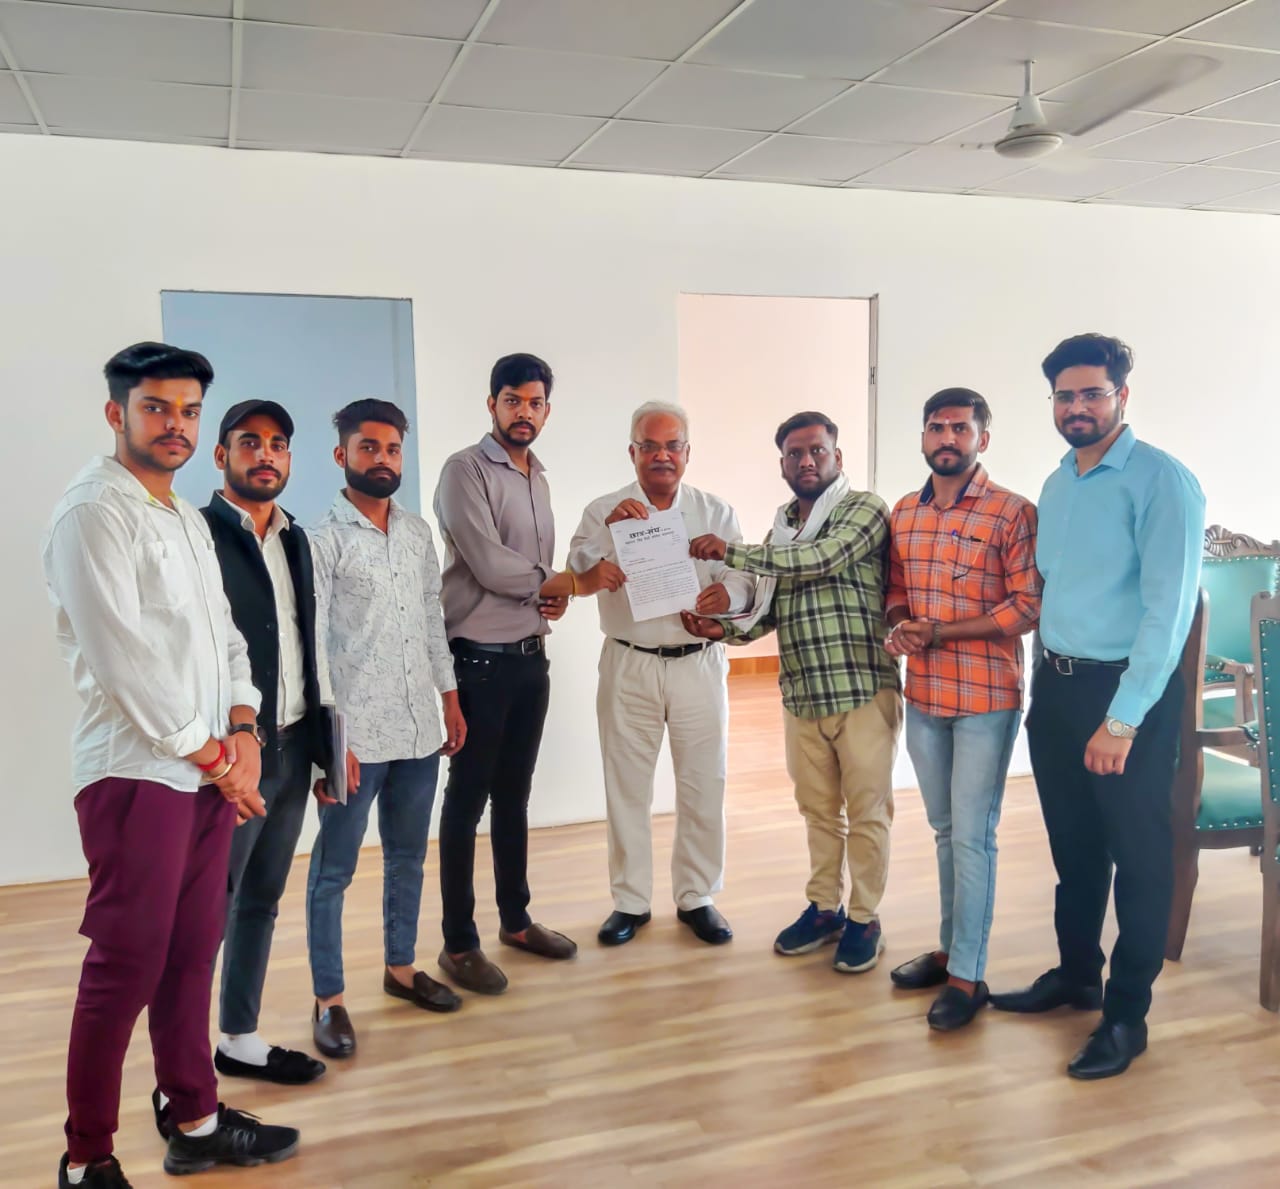 आज छात्र संघ महाराज सिंह डिग्री कॉलेज सहारनपुर का एक प्रतिनिधिमंडल छात्र-छात्रा समस्या के समाधान को लेकर माननीय कुलपति महोदय से मिले